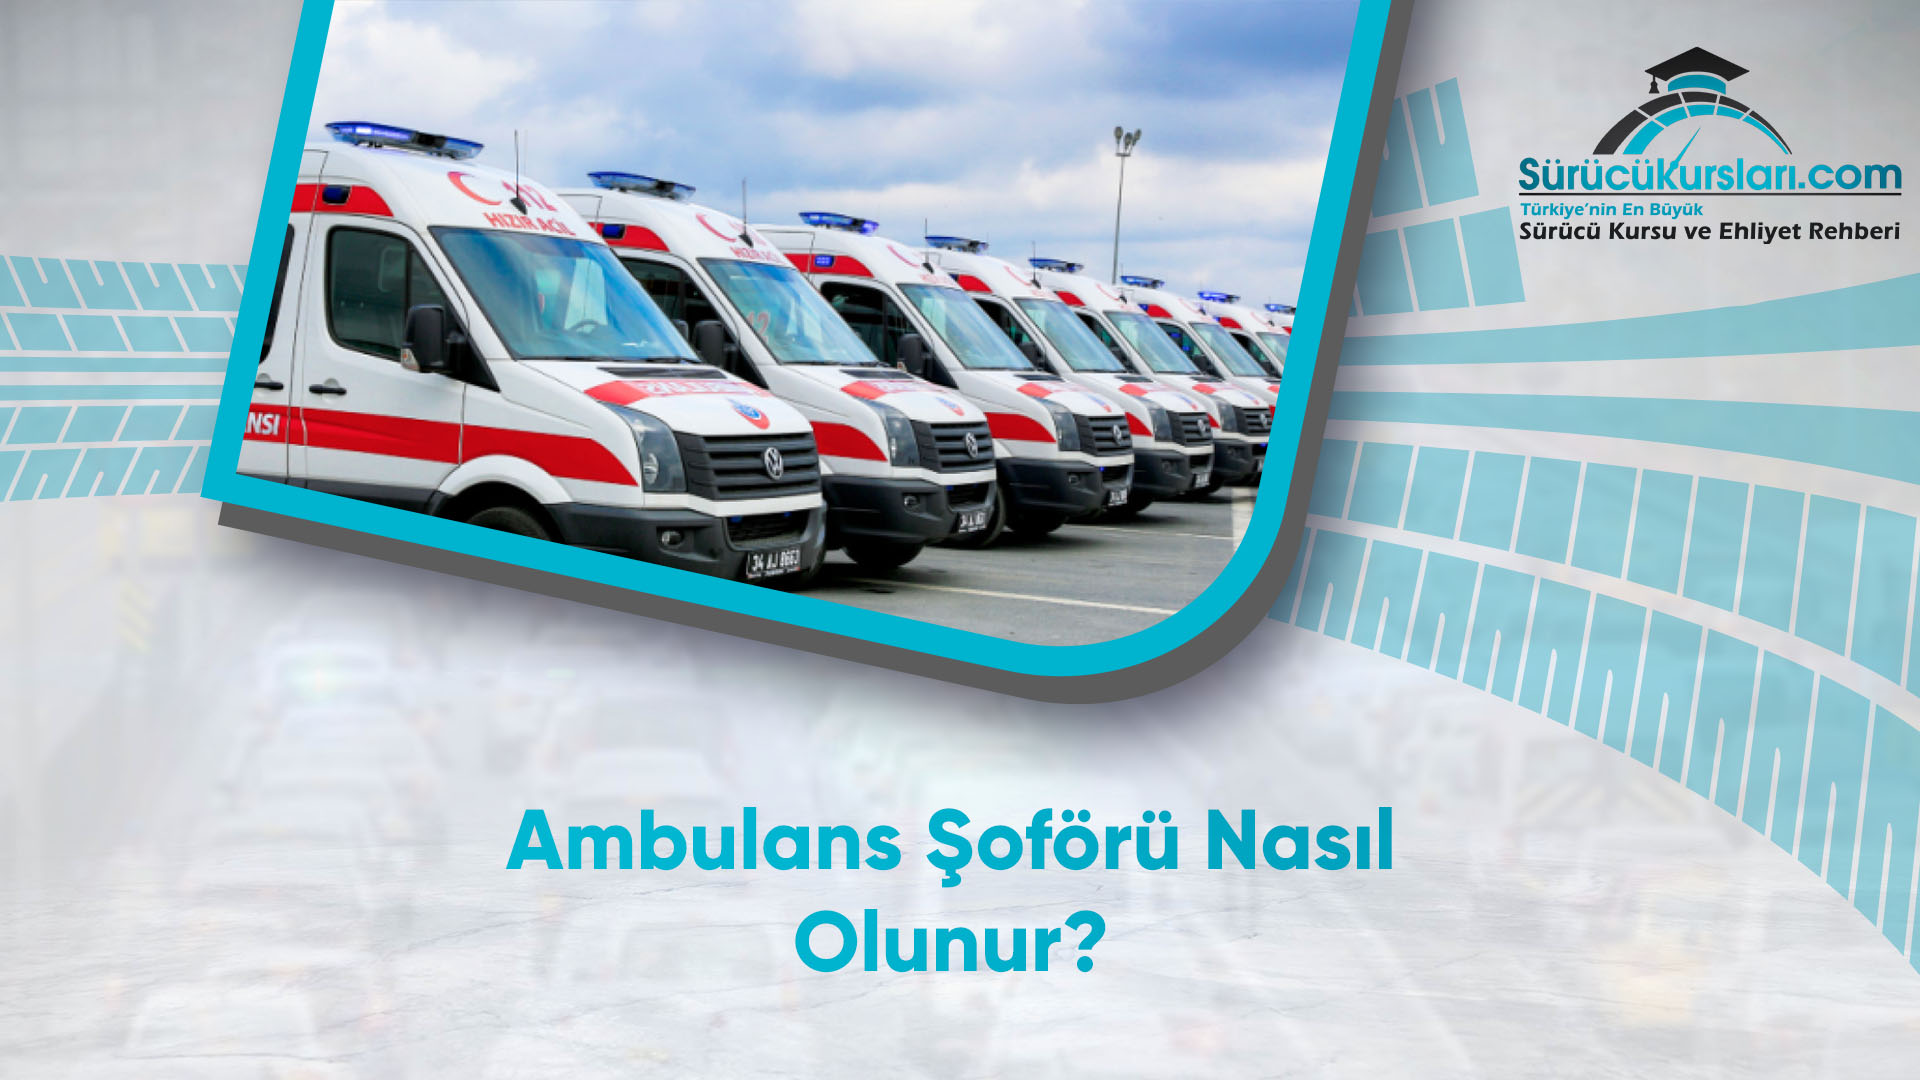 ambulans soforu nasil olunur surucukurslari com